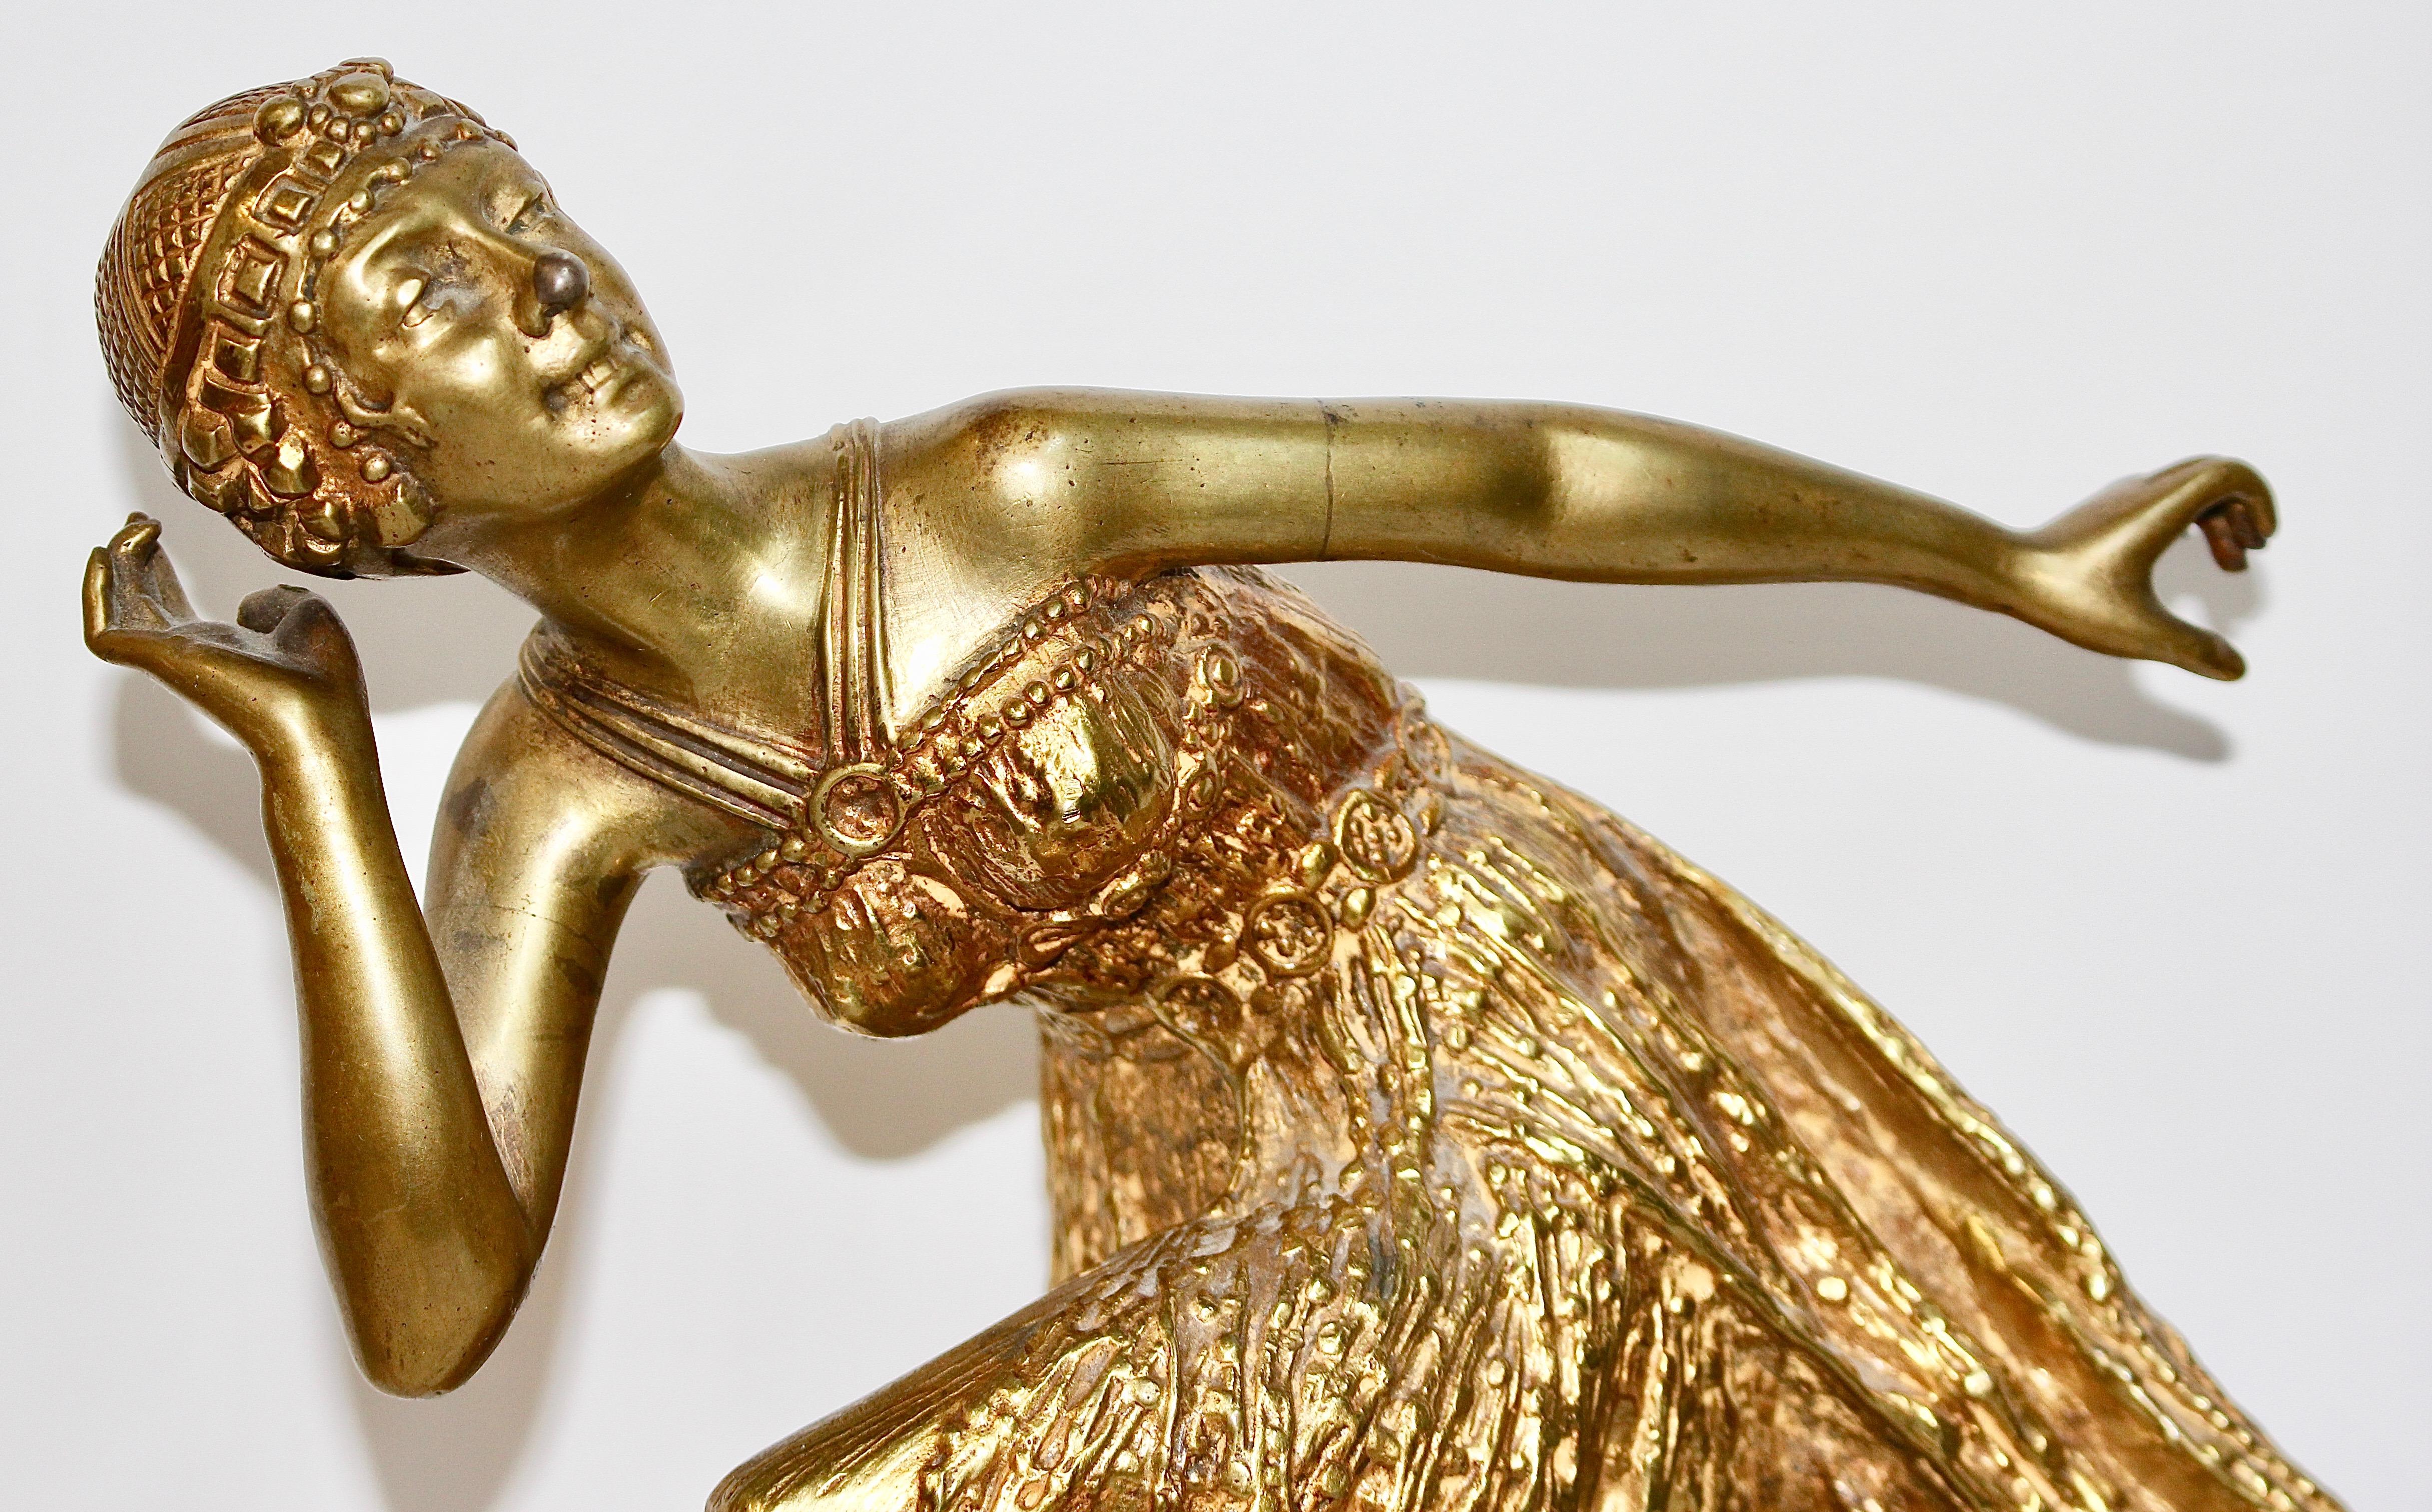 Enchanting and decorative antique bronze sculpture.
Antique fire-gilded bronze sculpture. Art Deco, Nouveau dancing lady. 